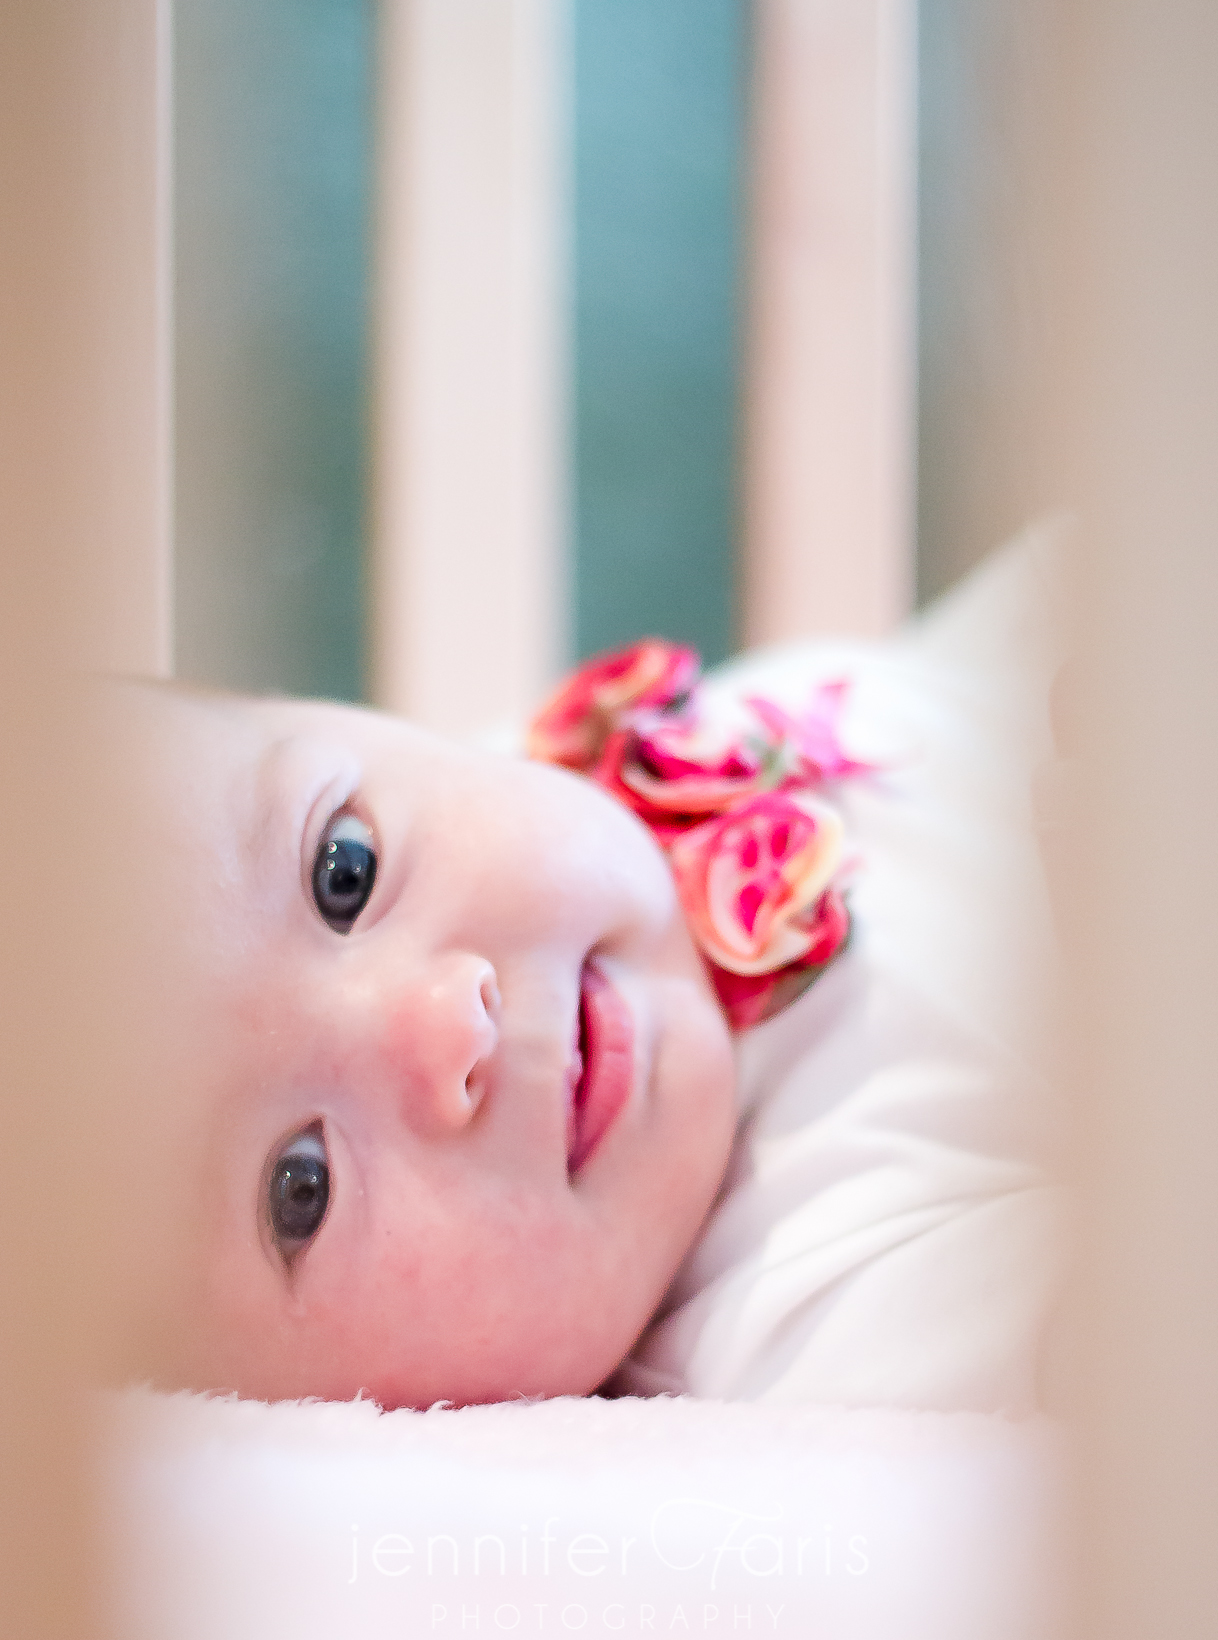 Raelynn – 8 weeks old